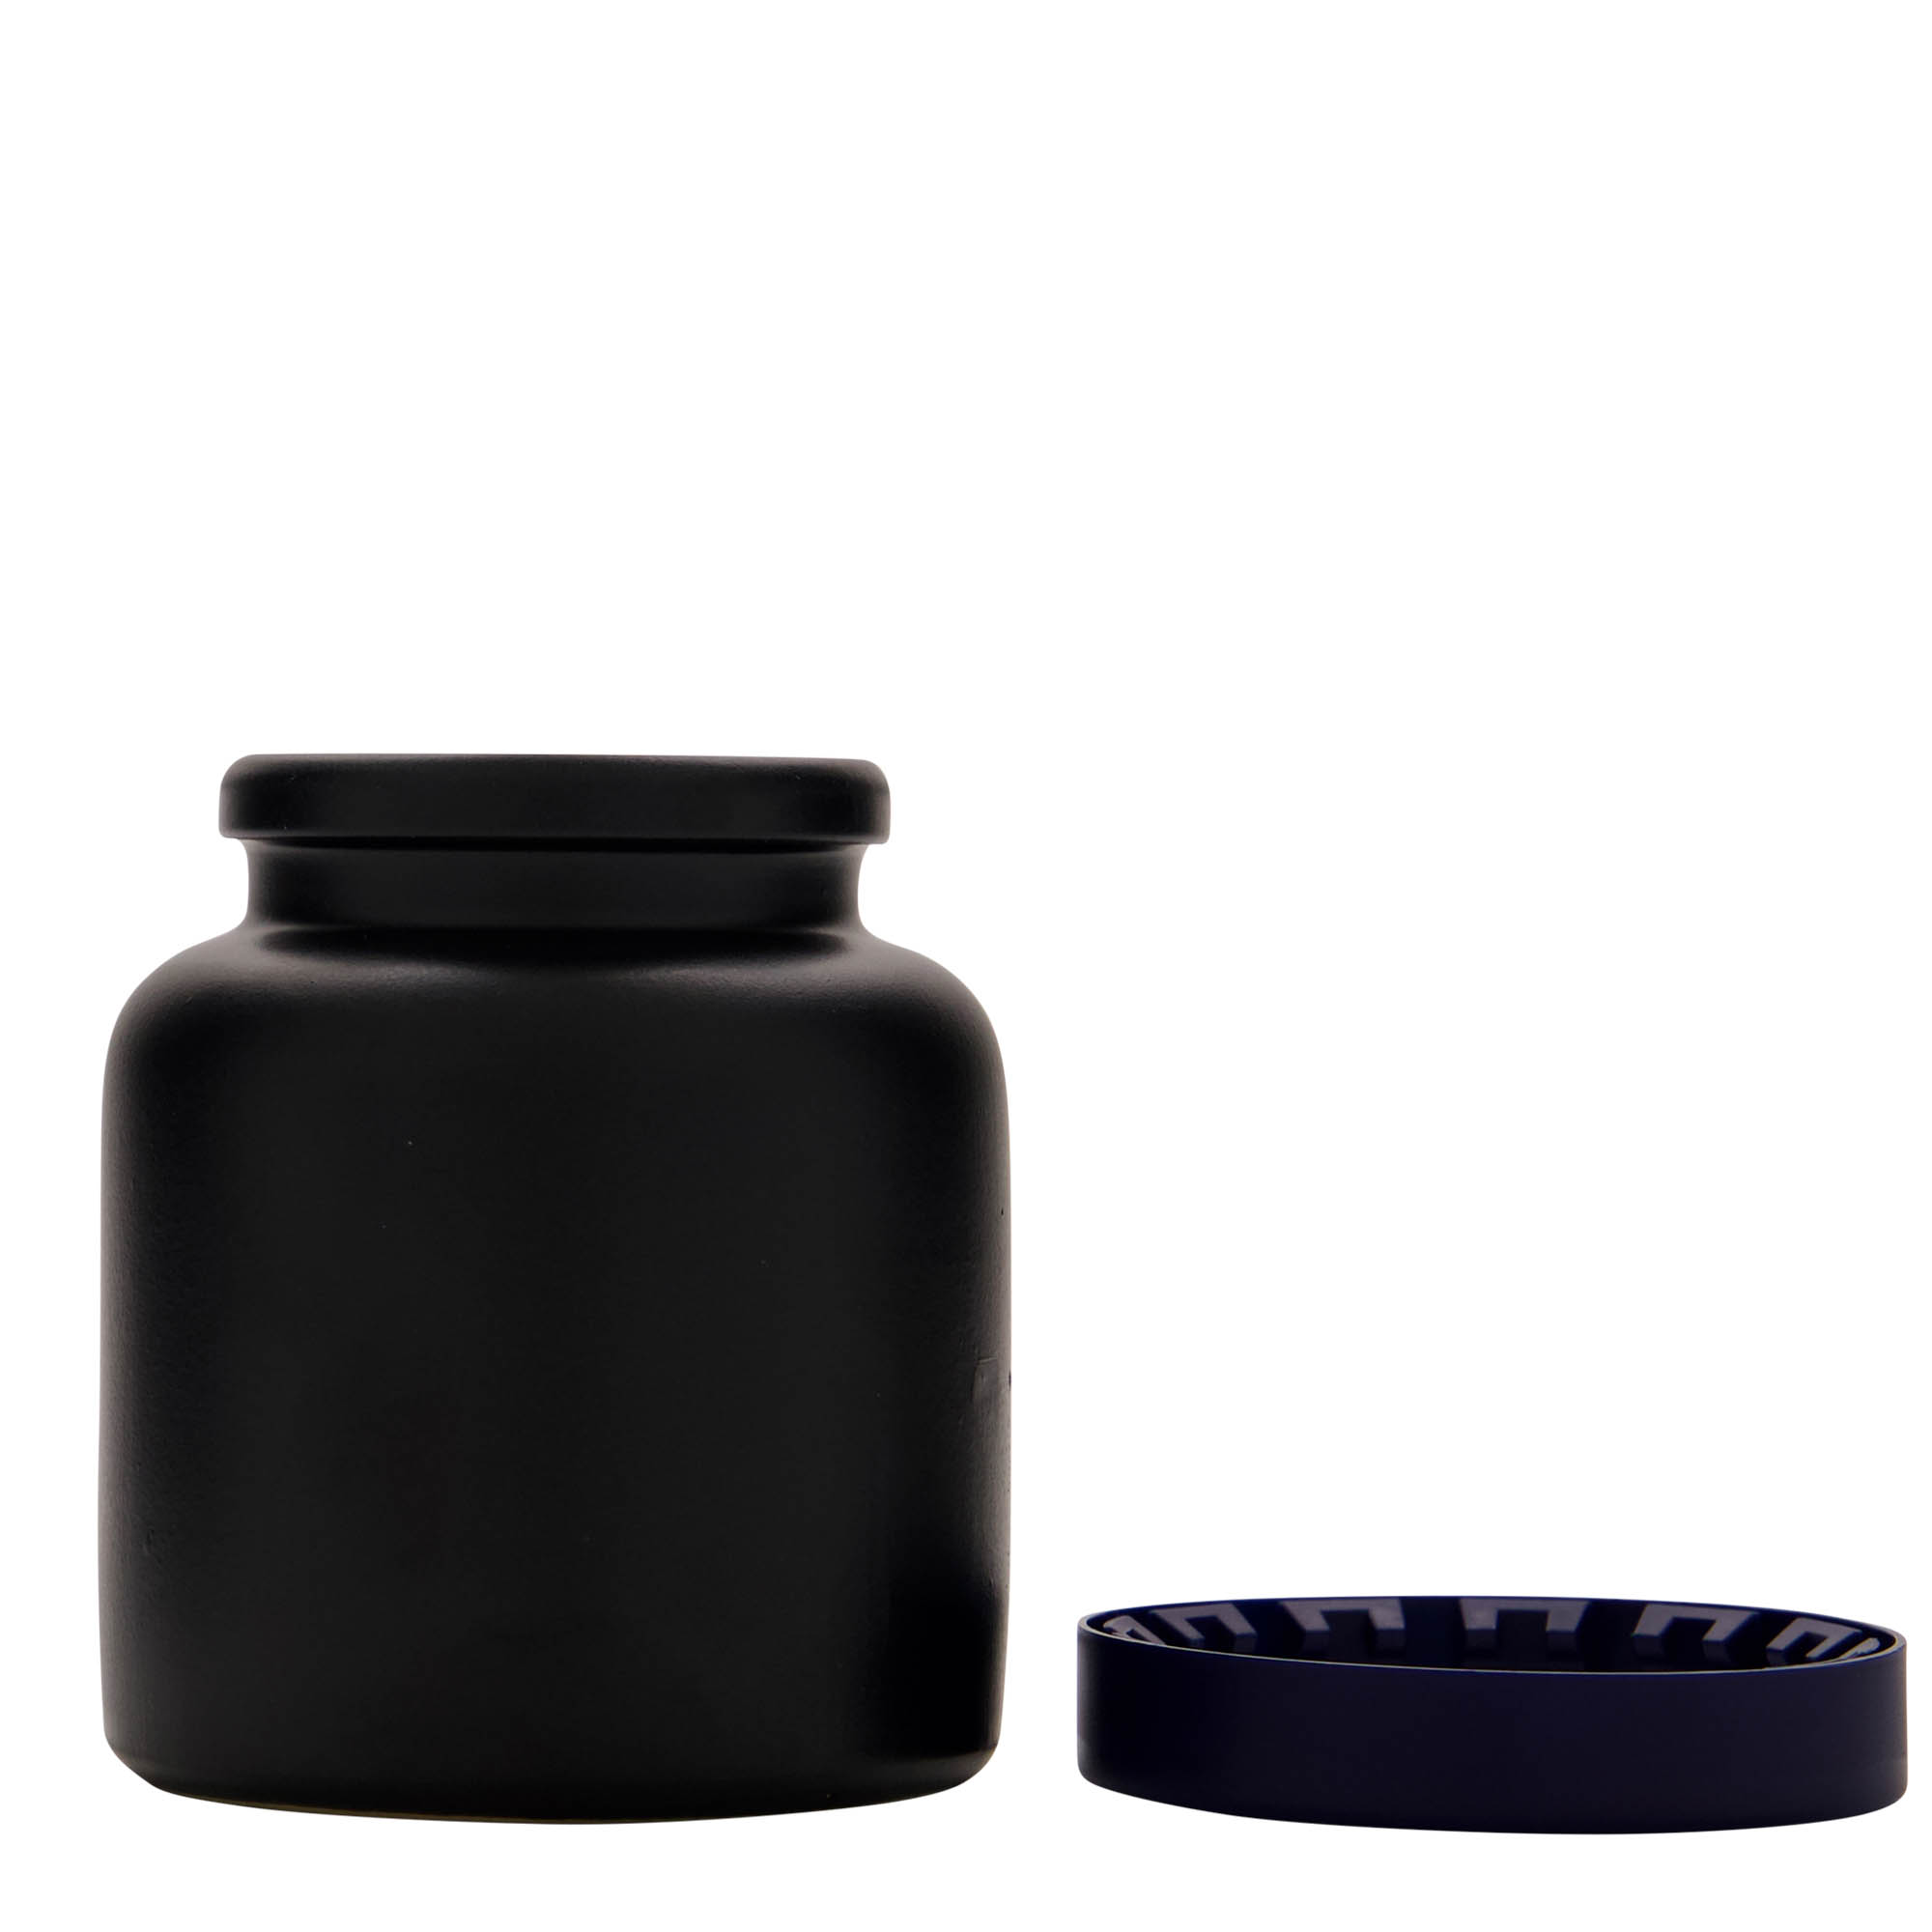 Kameninový hrnec 270 ml, keramika, černá, uzávěr: nasazovací víko